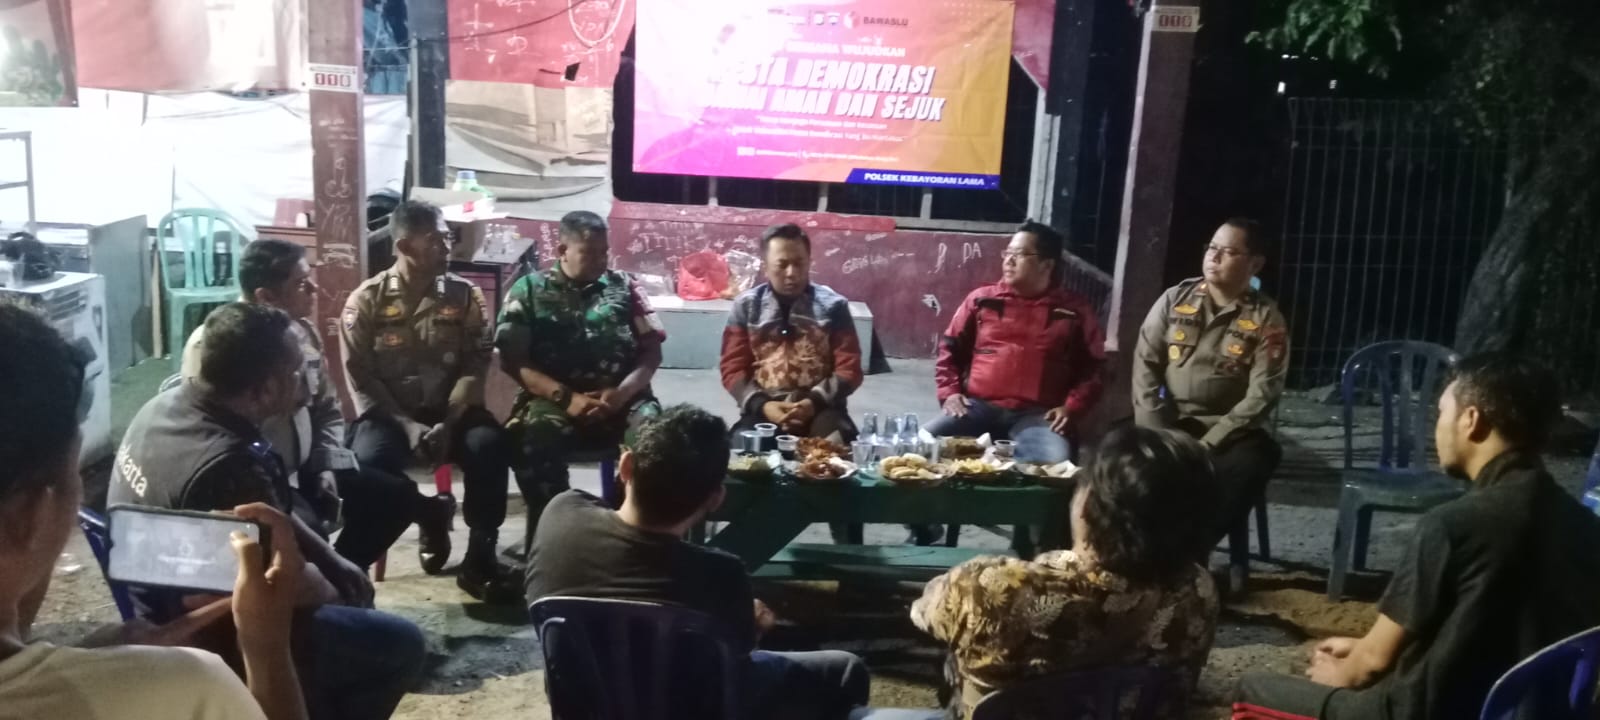 Polres Jaksel Cangkrukan Bareng Warga Jamin Keamanan Jelang Nataru